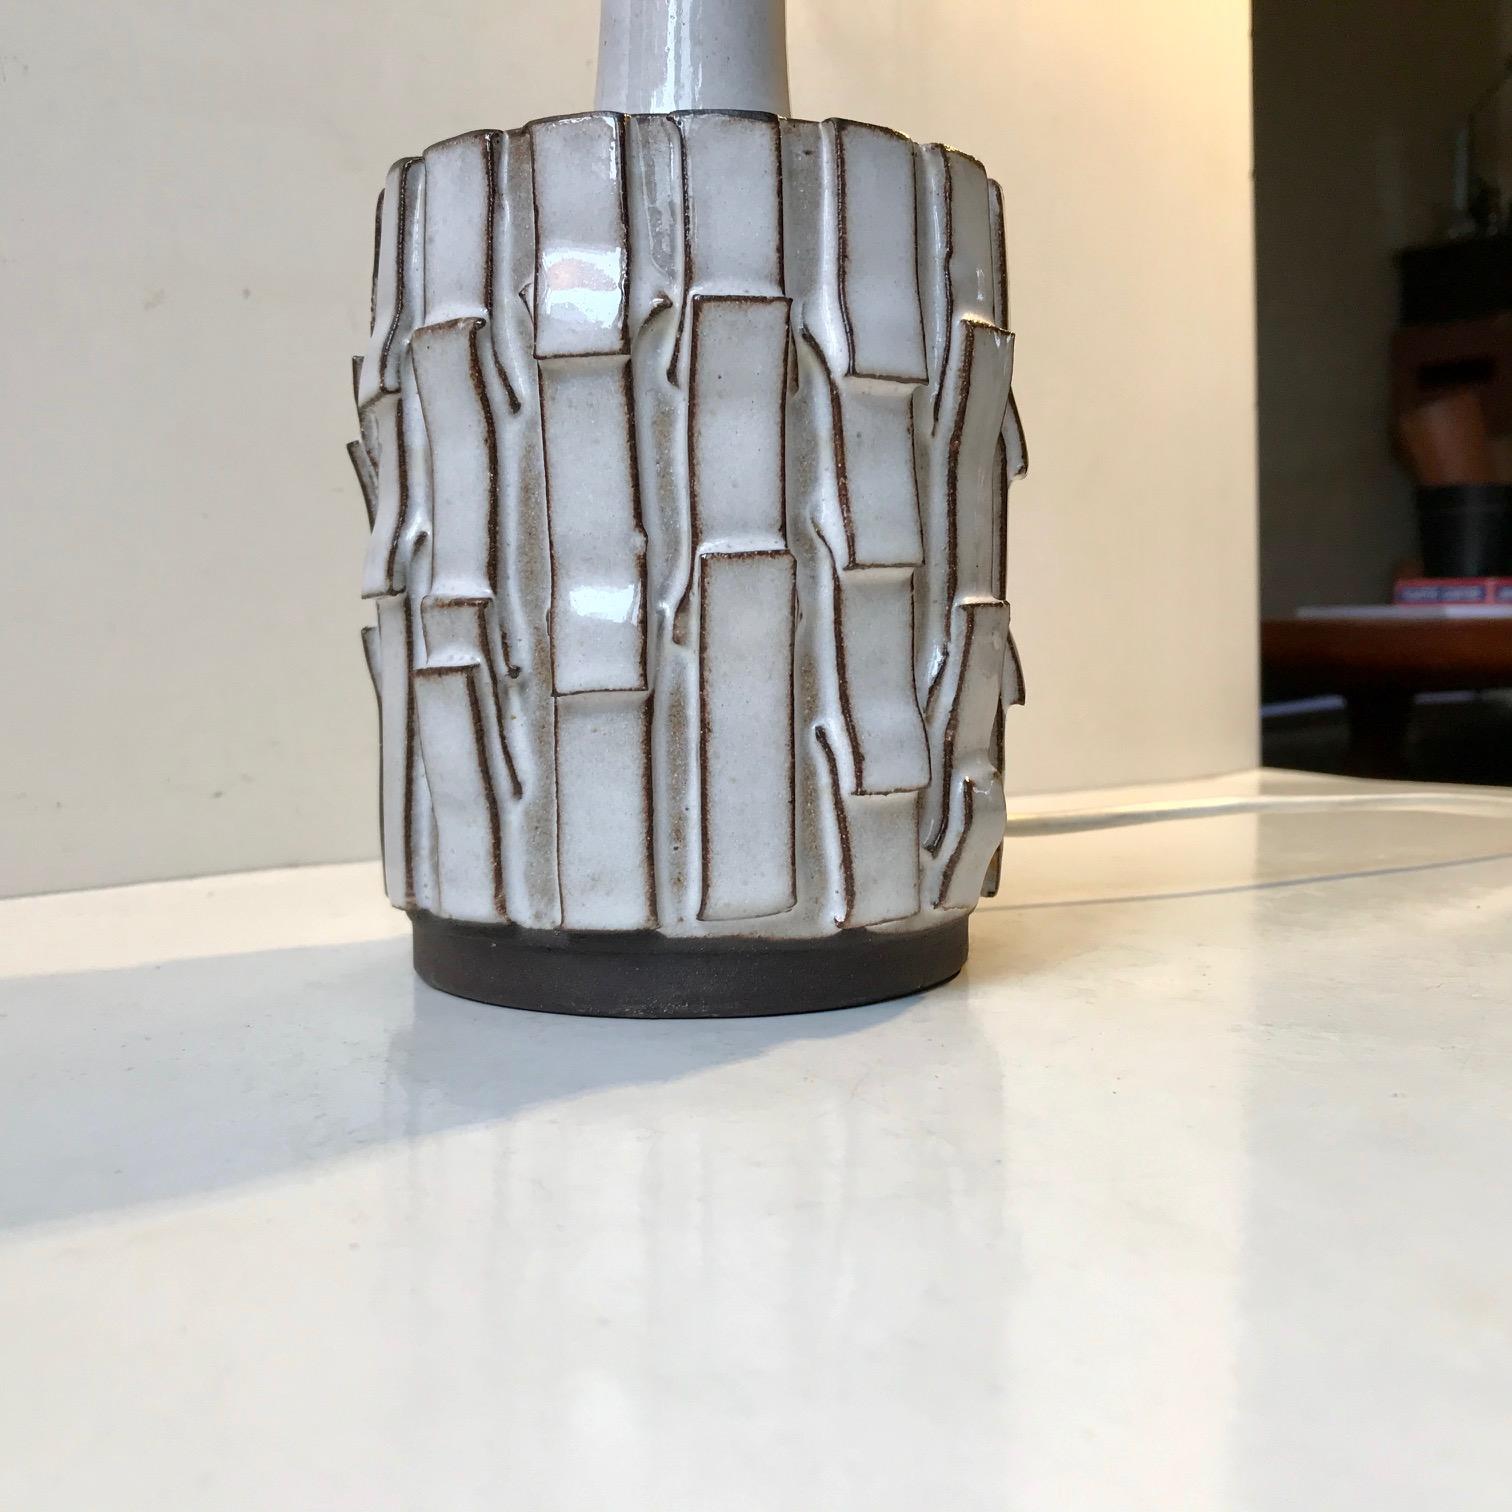 Danish Japanese Inspired Ceramic Table Lamp by Preben H. Gottschalk-Olsen, 1970s For Sale